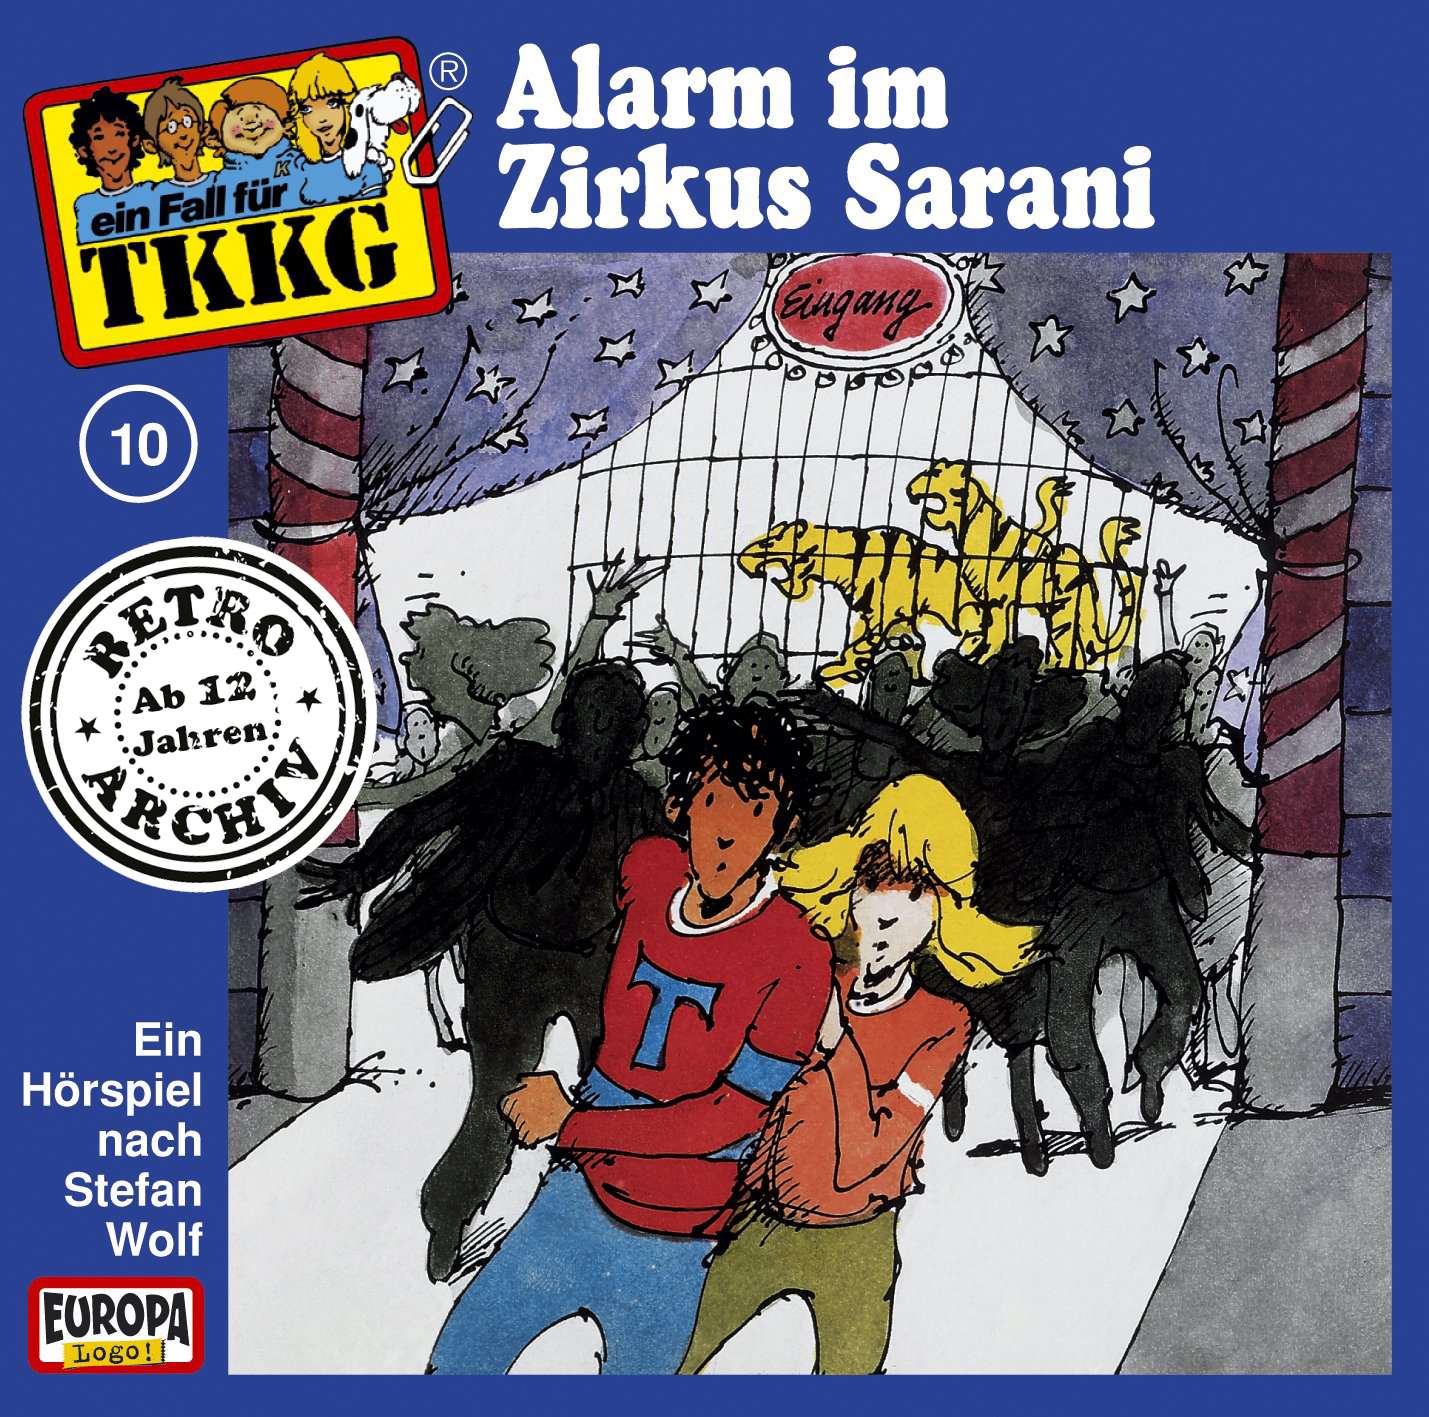 TKKG Retro-Archiv - Alarm im Zirkus Sarani